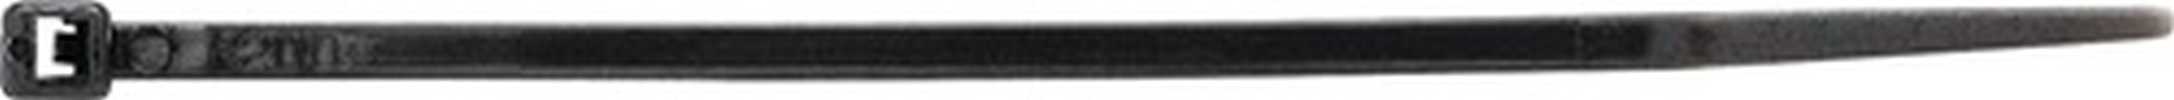 Kabelbinder  Länge 290 mm Breite 3,6 mm Polyamid schwarz UV-beständig